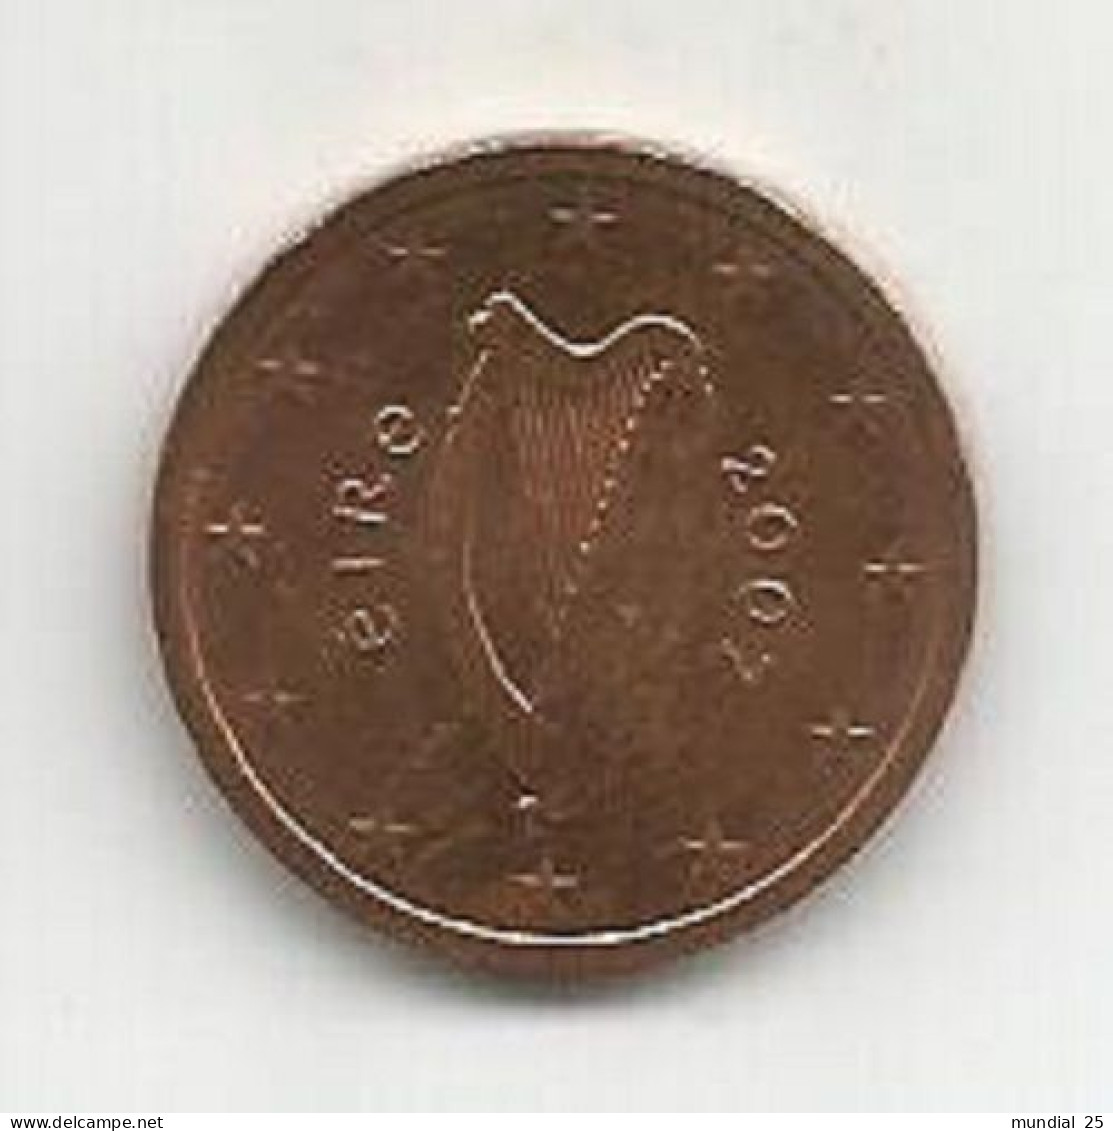 IRELAND 2 EURO CENT 2007 - Irlanda